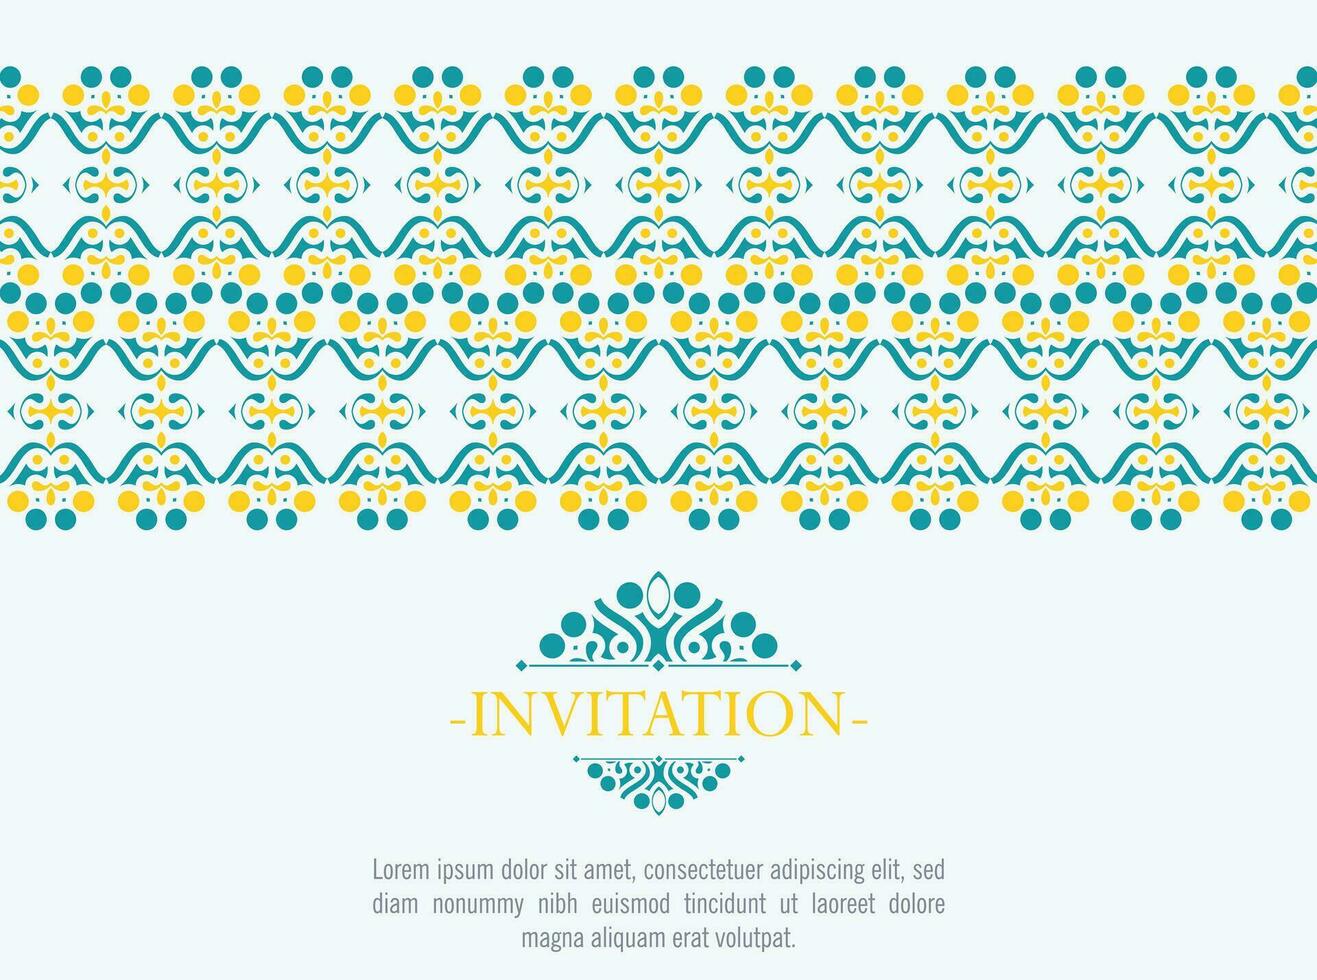 tarjeta de invitación diseño vectorial estilo vintage vector